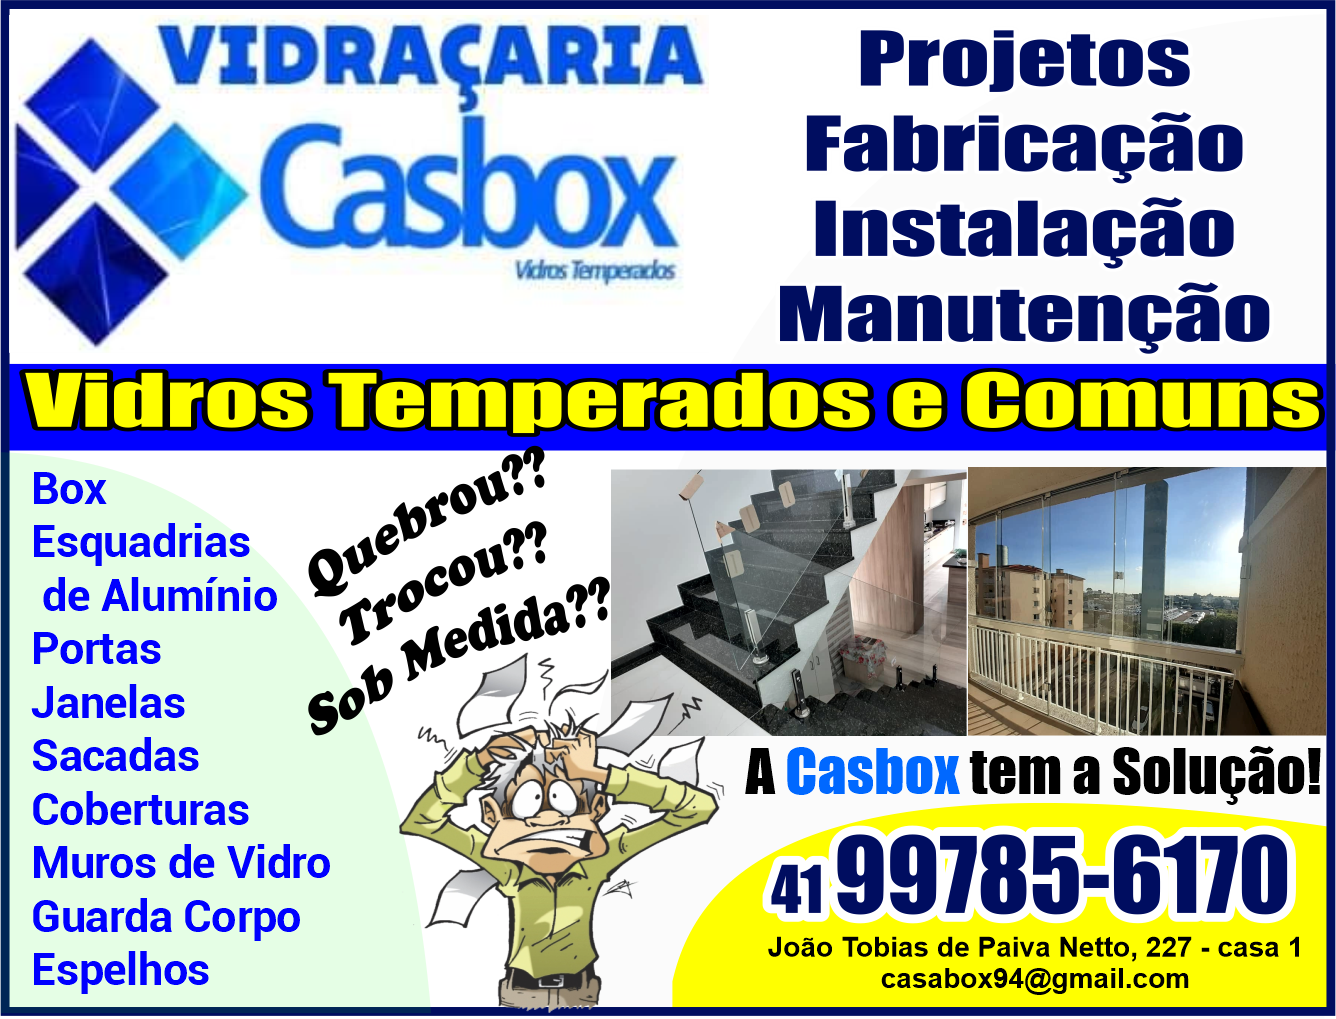 Casbox Vidros Temperados      RUA JOÃO TOBIAS DE PAIVA NETTO, 227, CURITIBA - PR  Fones: (41)99785-6170 /